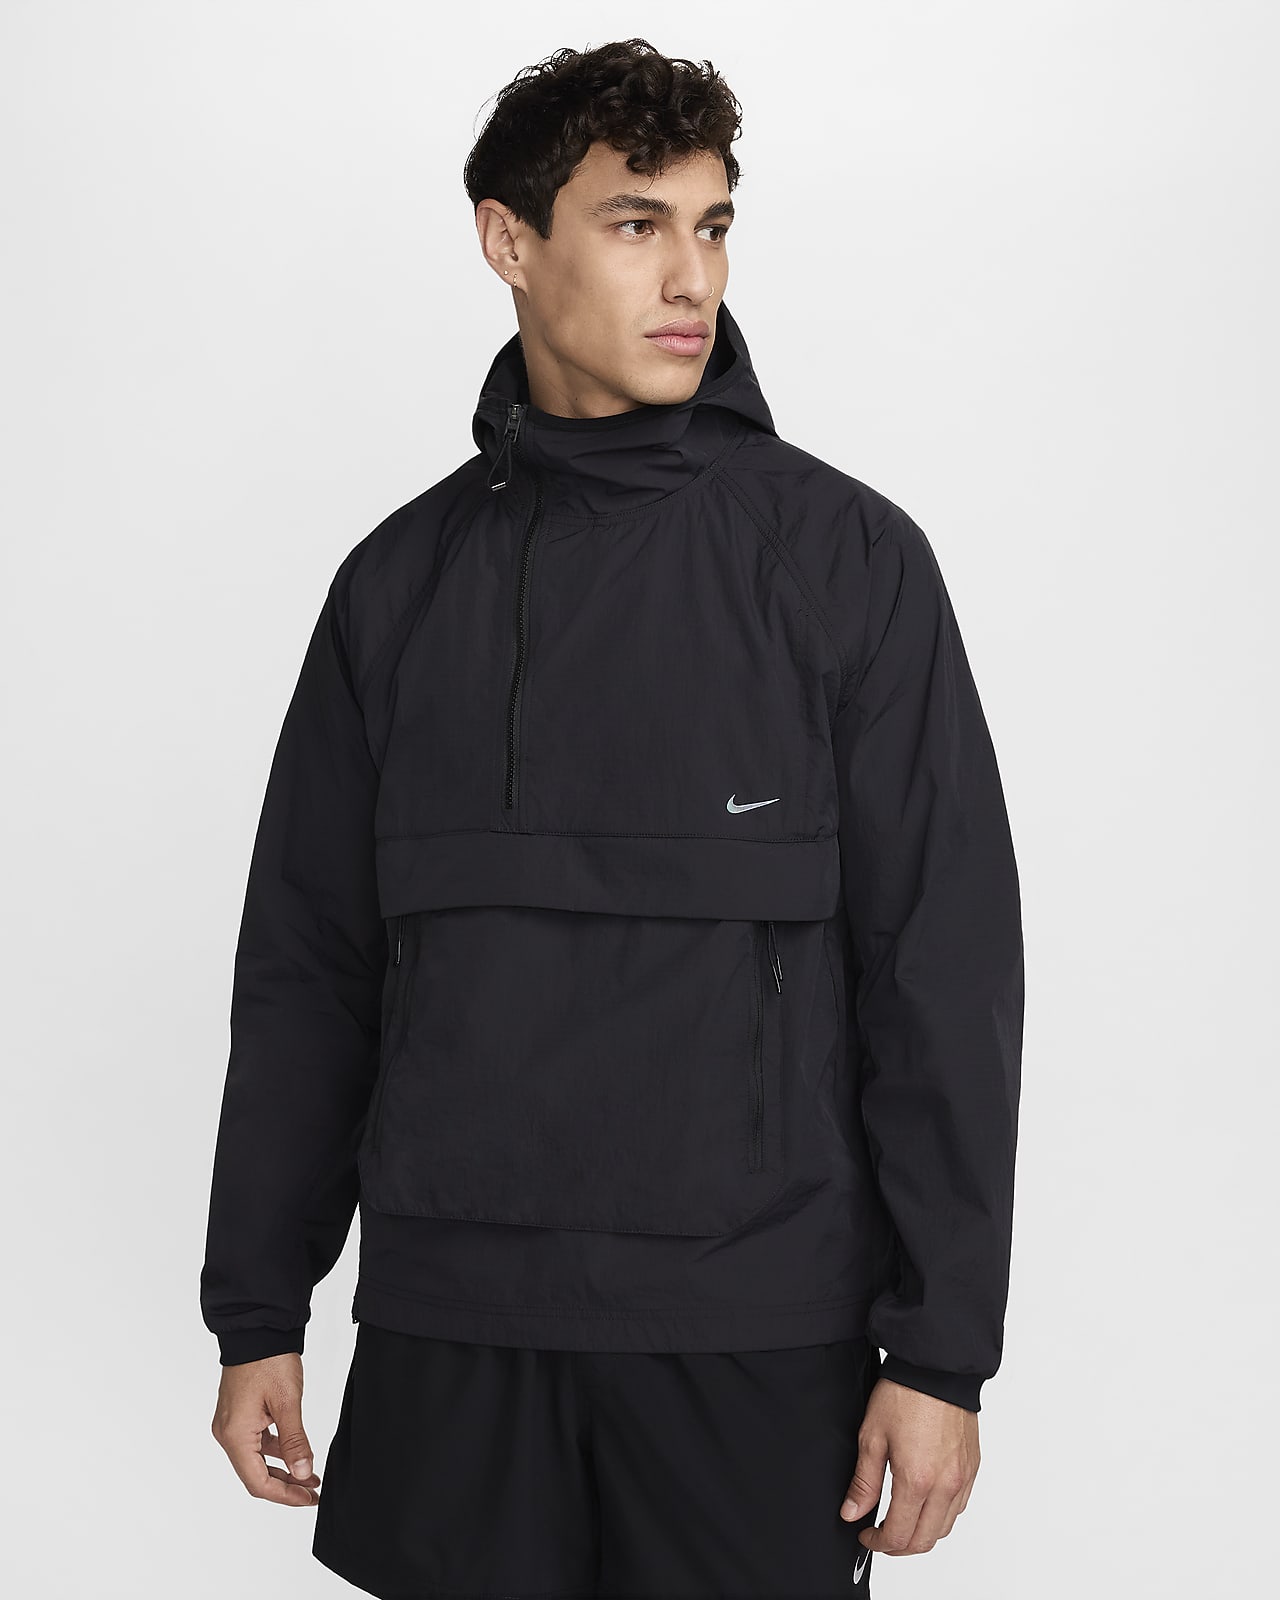 Nike A.P.S. Męska lekka uniwersalna kurtka chroniąca przed deszczem i promieniowaniem UV